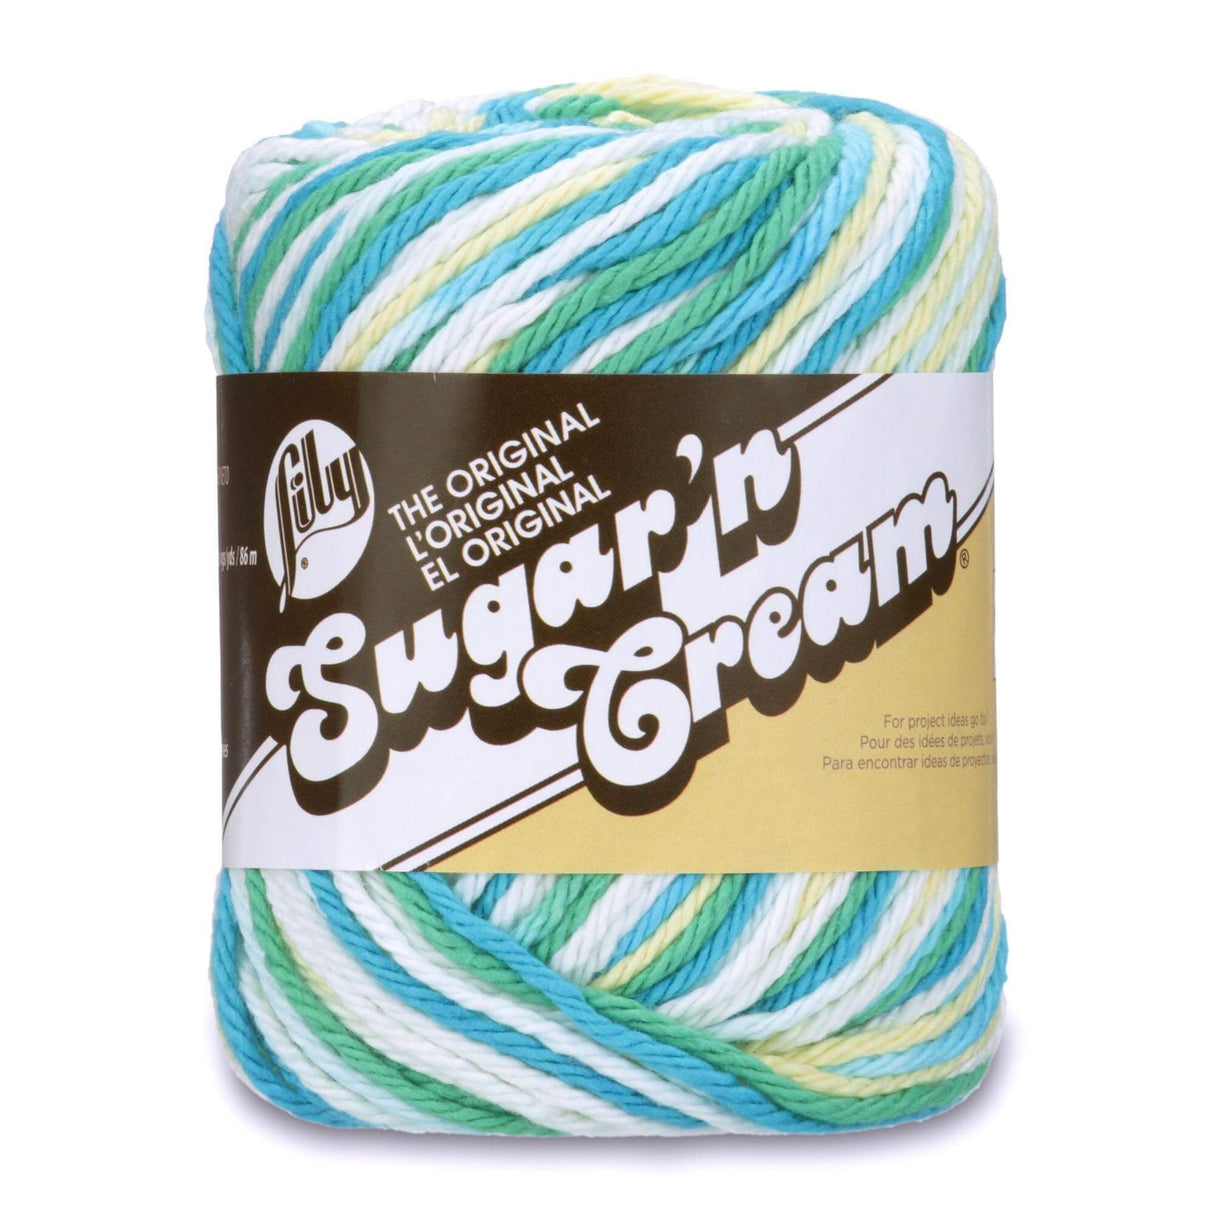 Lily Sugar'n Cream Yarn